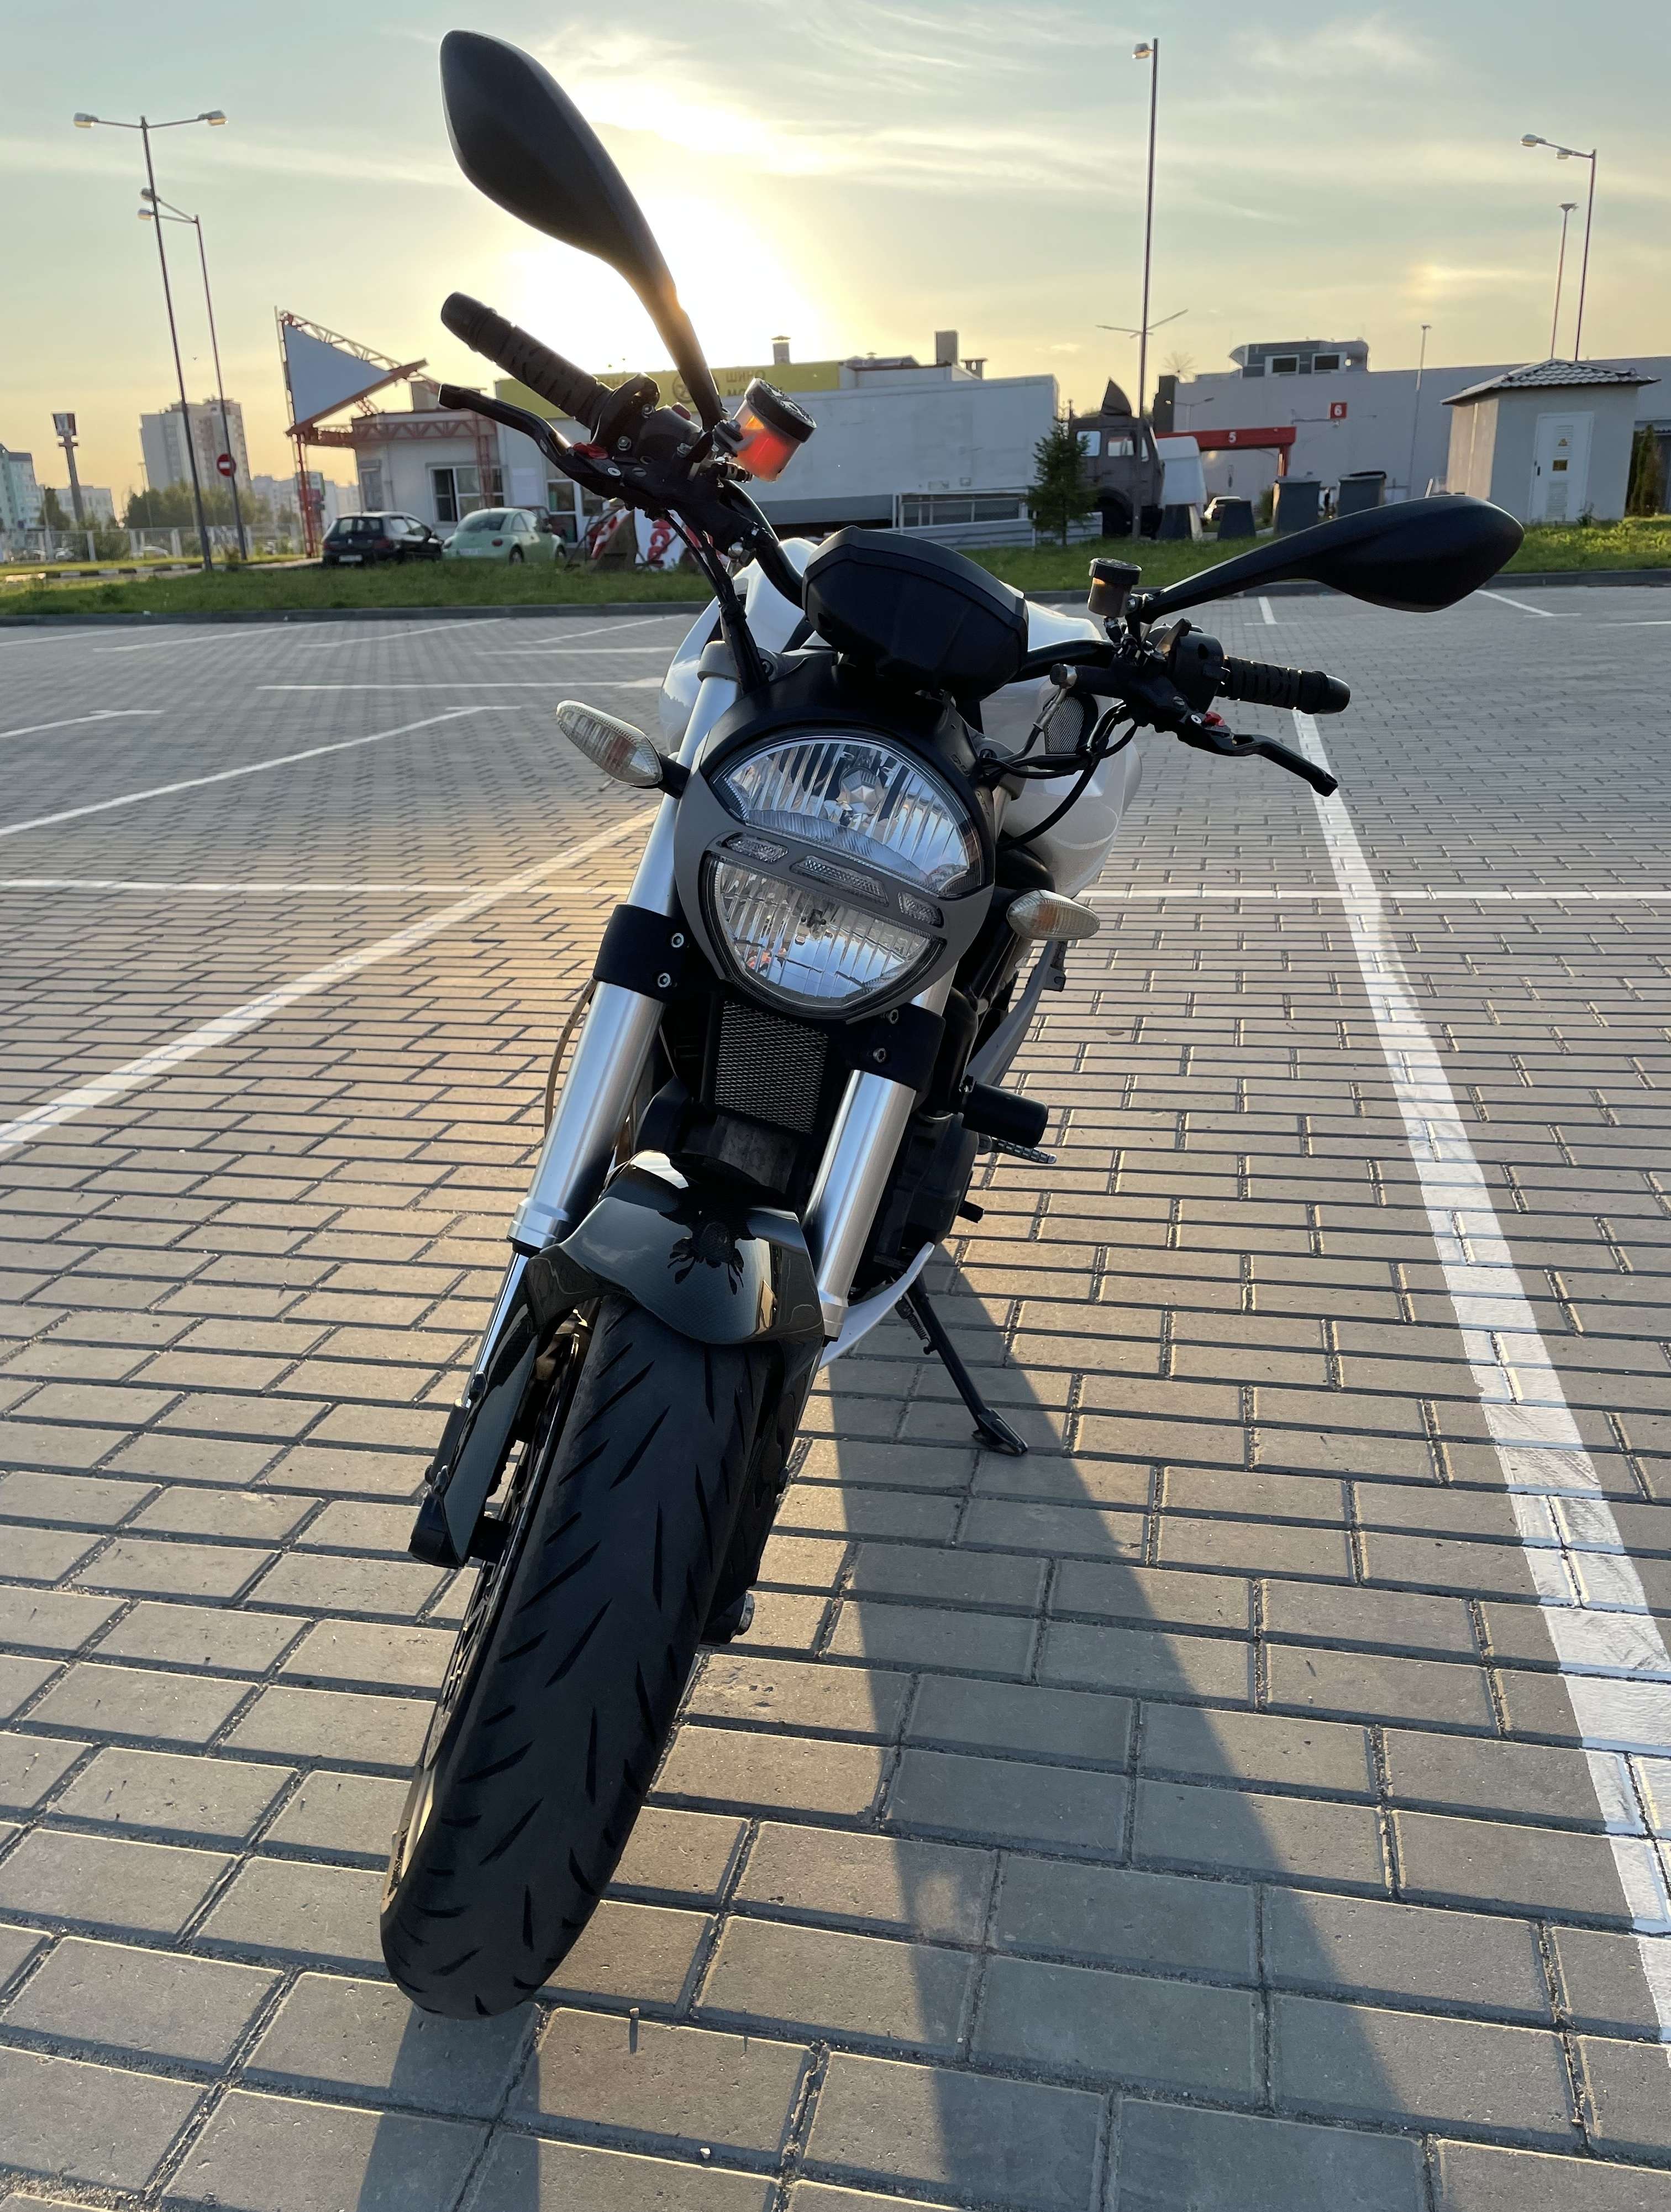 Купить мотоцикл Ducati Monster в Беларуси в кредит - цены, характеристики, фото. в Беларуси в кредит